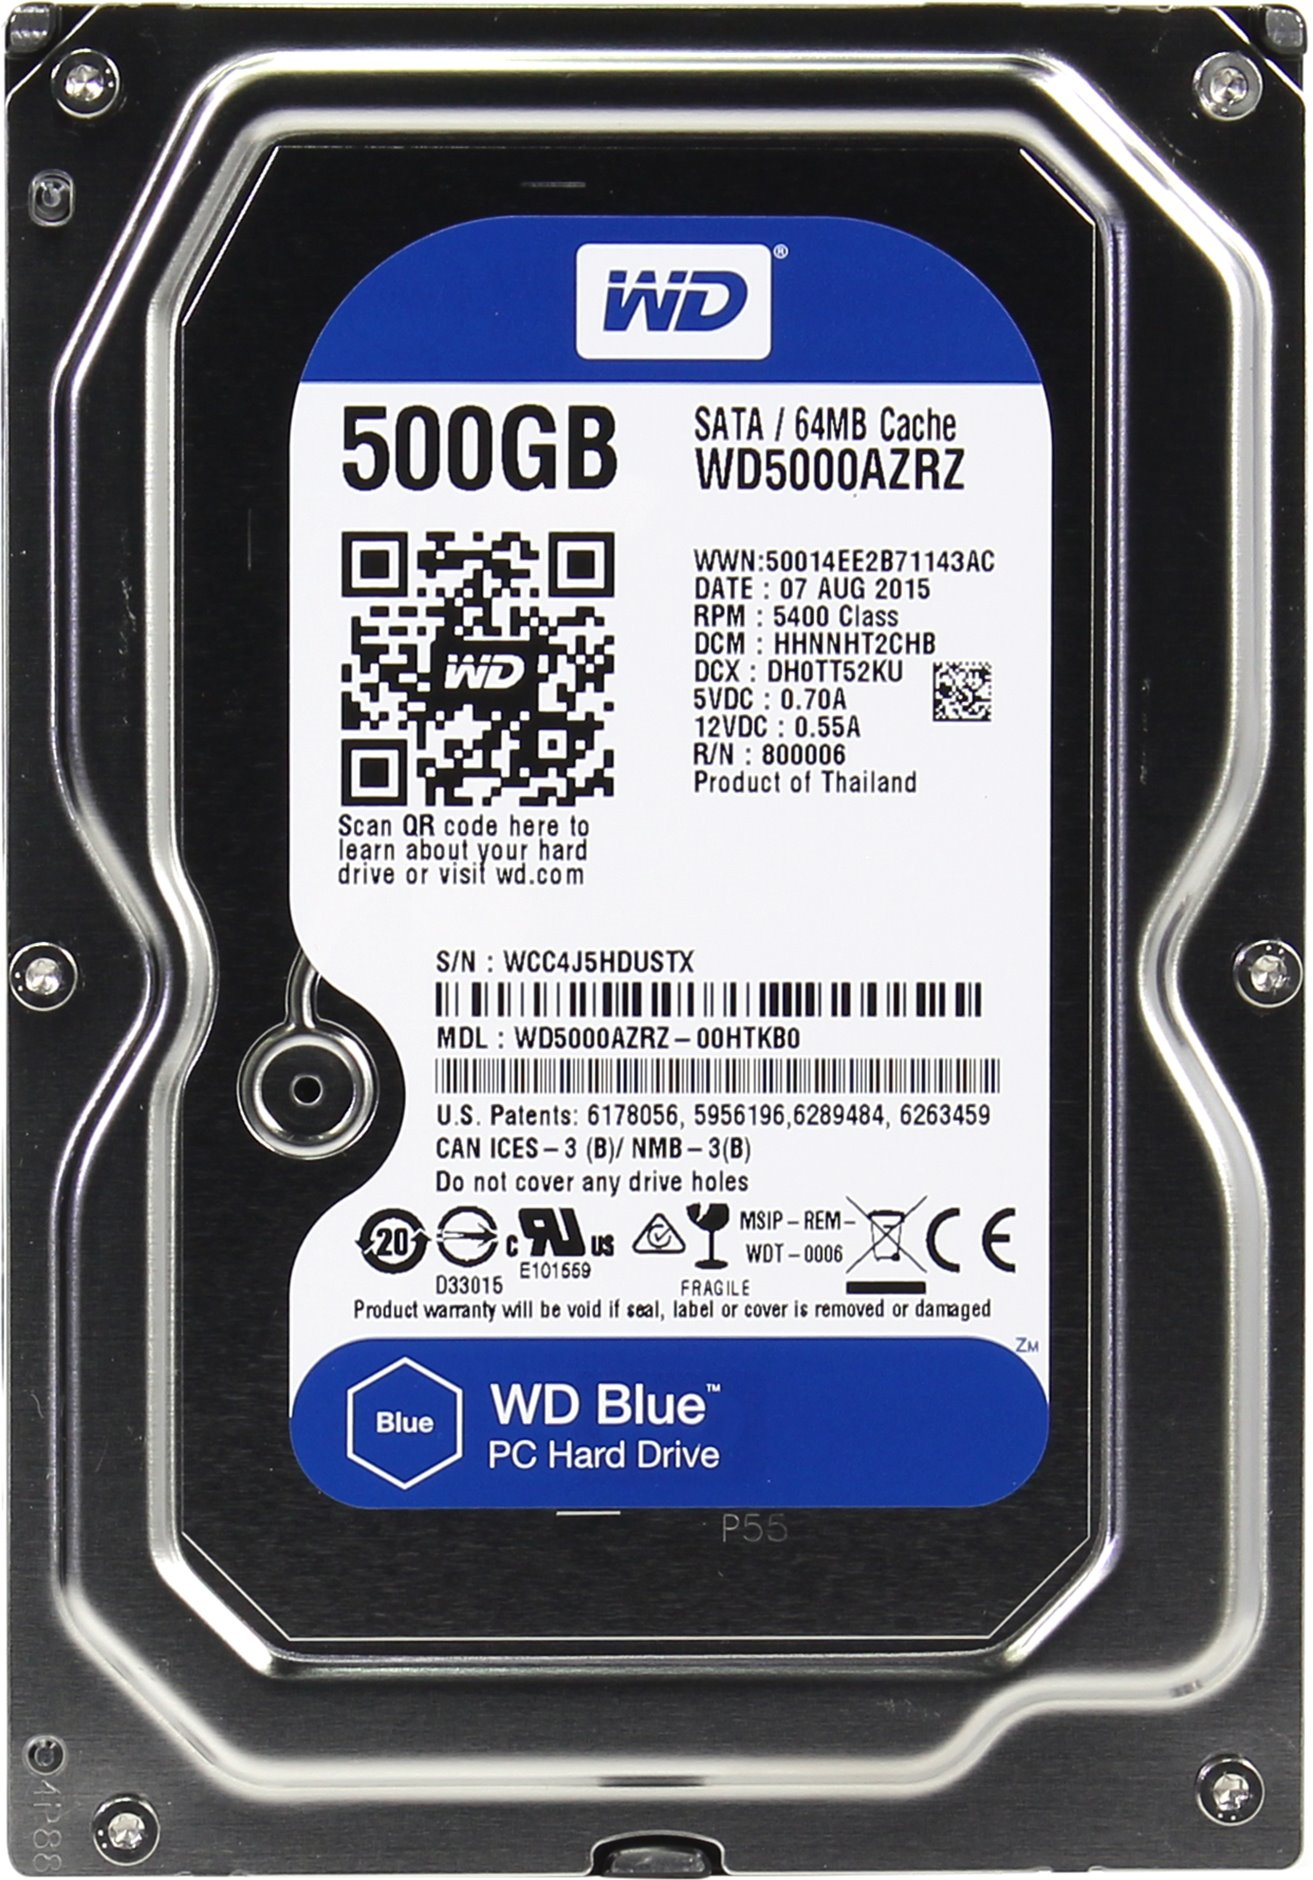 Sata iii western digital blue. HDD WD Blue 1tb. 0.5 ТБ жесткий диск WD Blue. Жесткий диск Western Digital WD Blue 1 TB. Жёсткий диск WD Blue 500 ГБ.